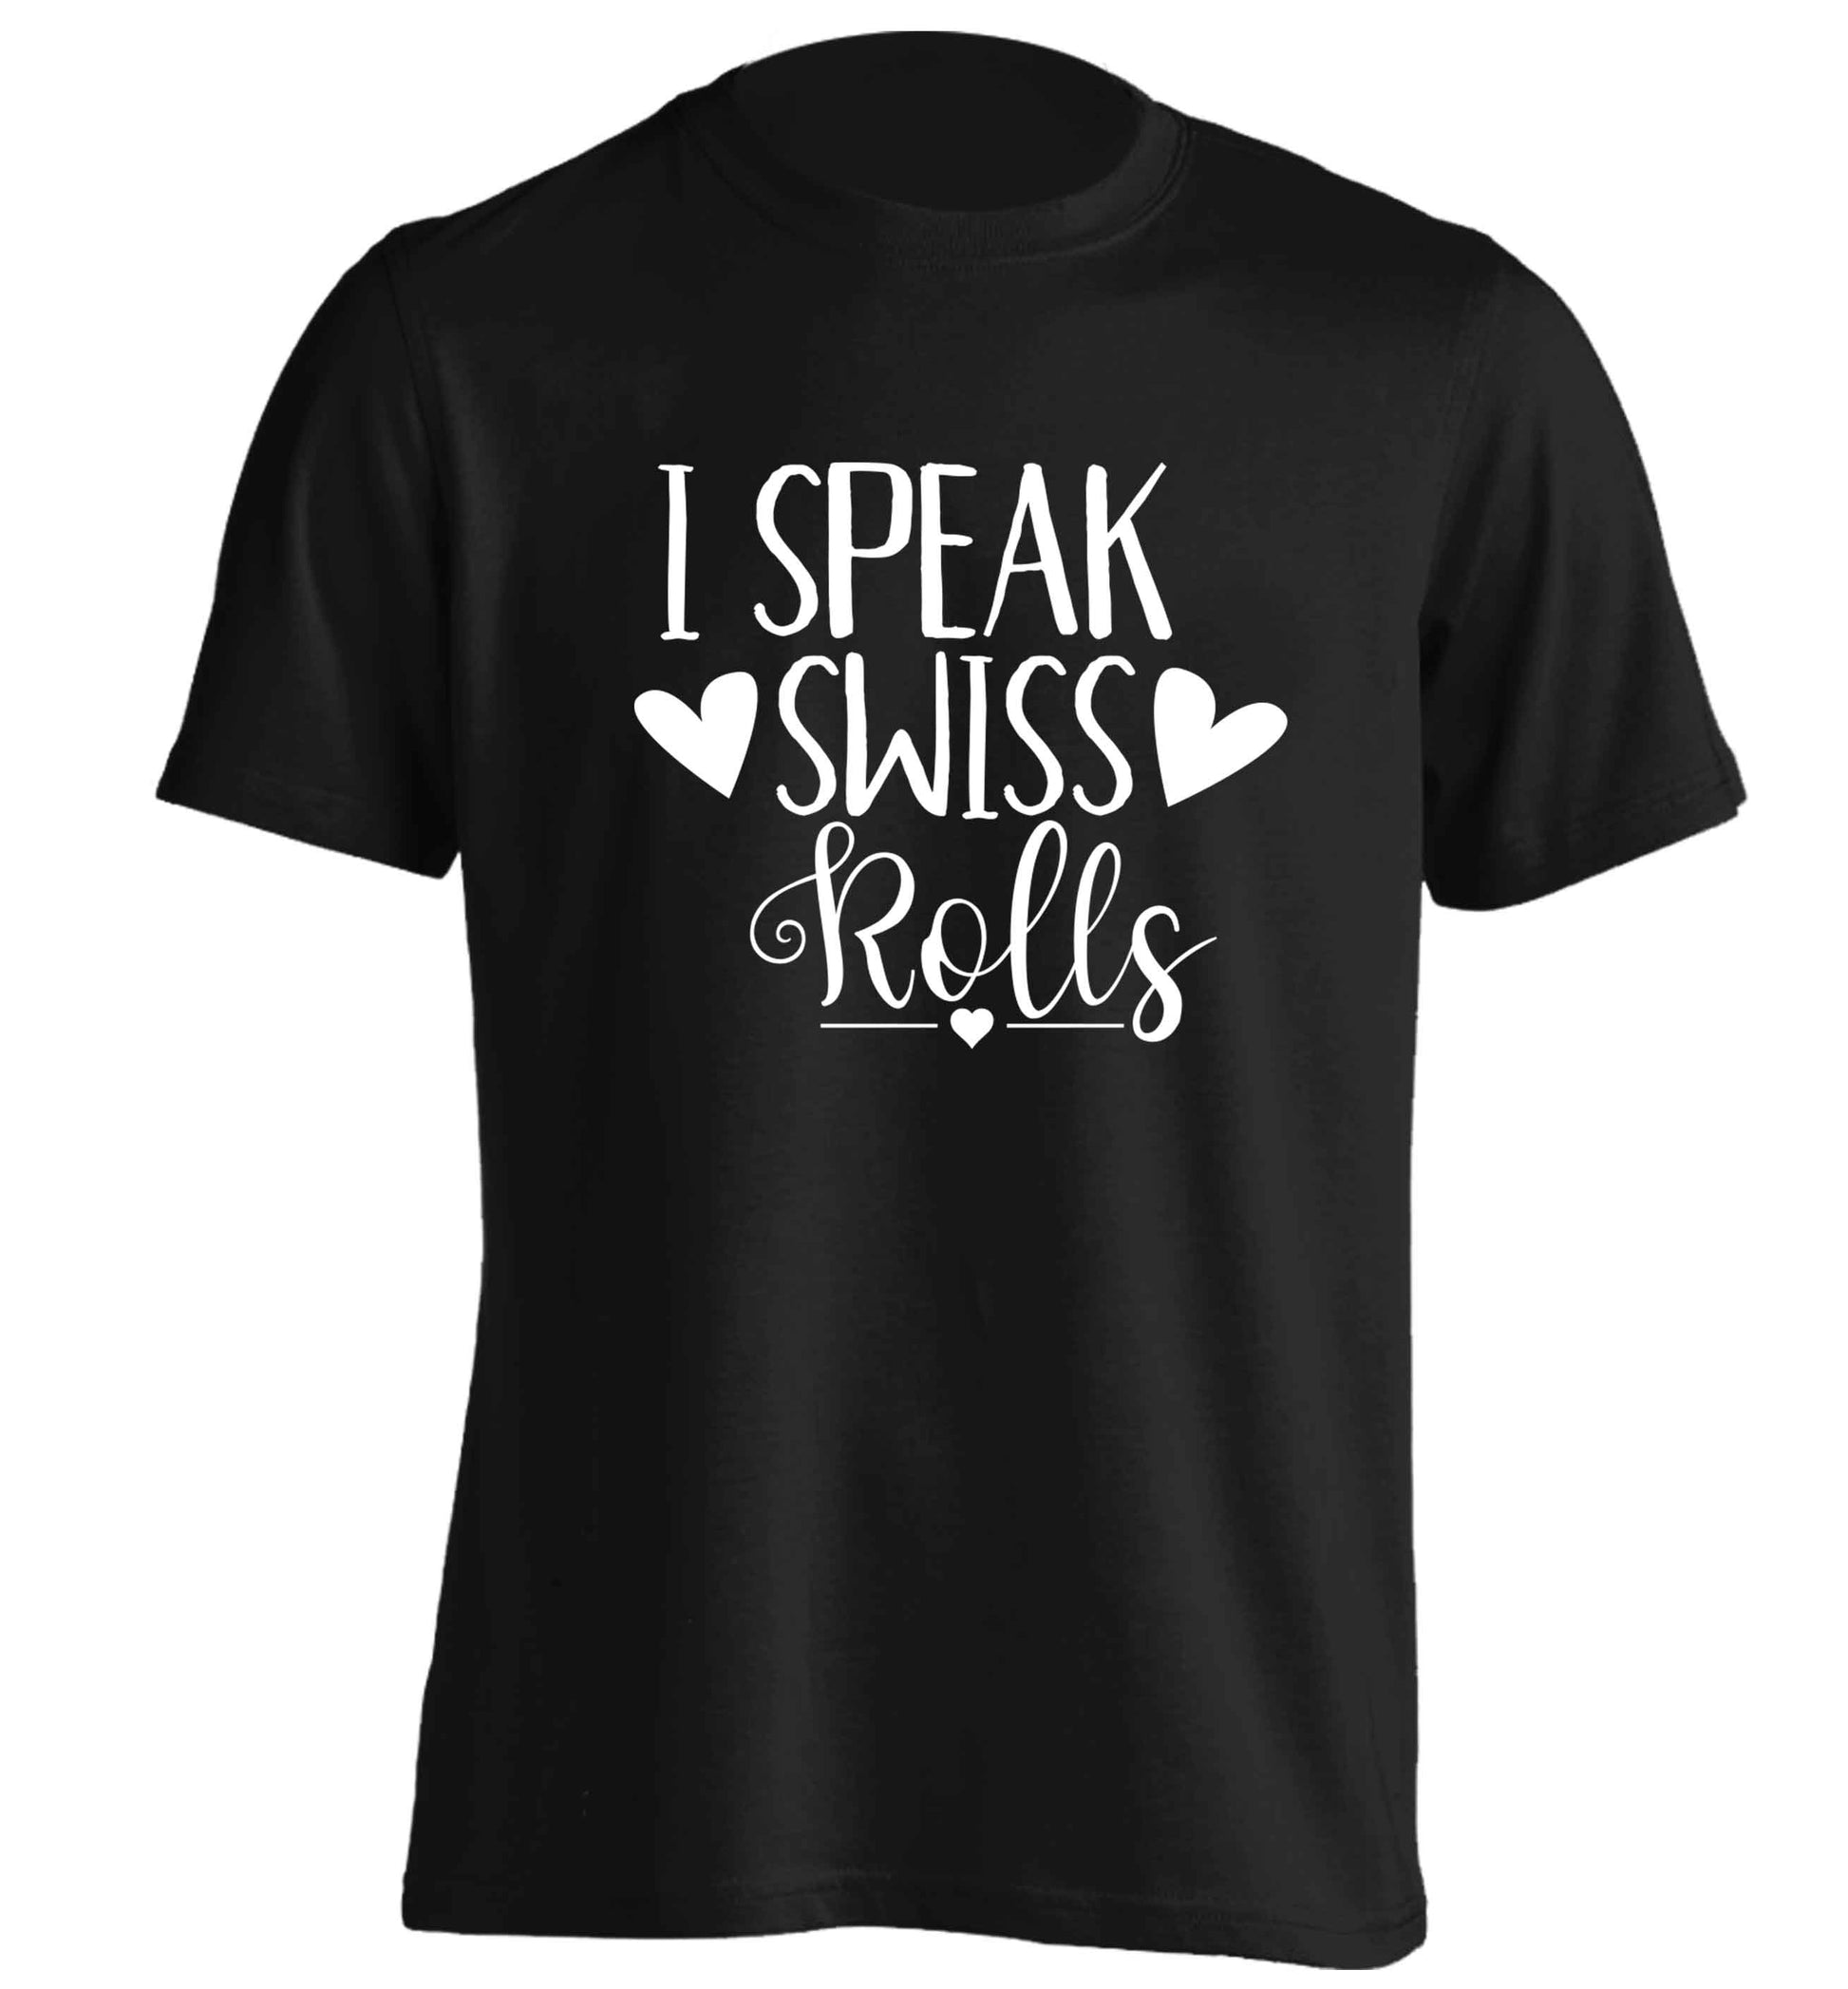 I speak swiss..rolls adults unisex black Tshirt 2XL